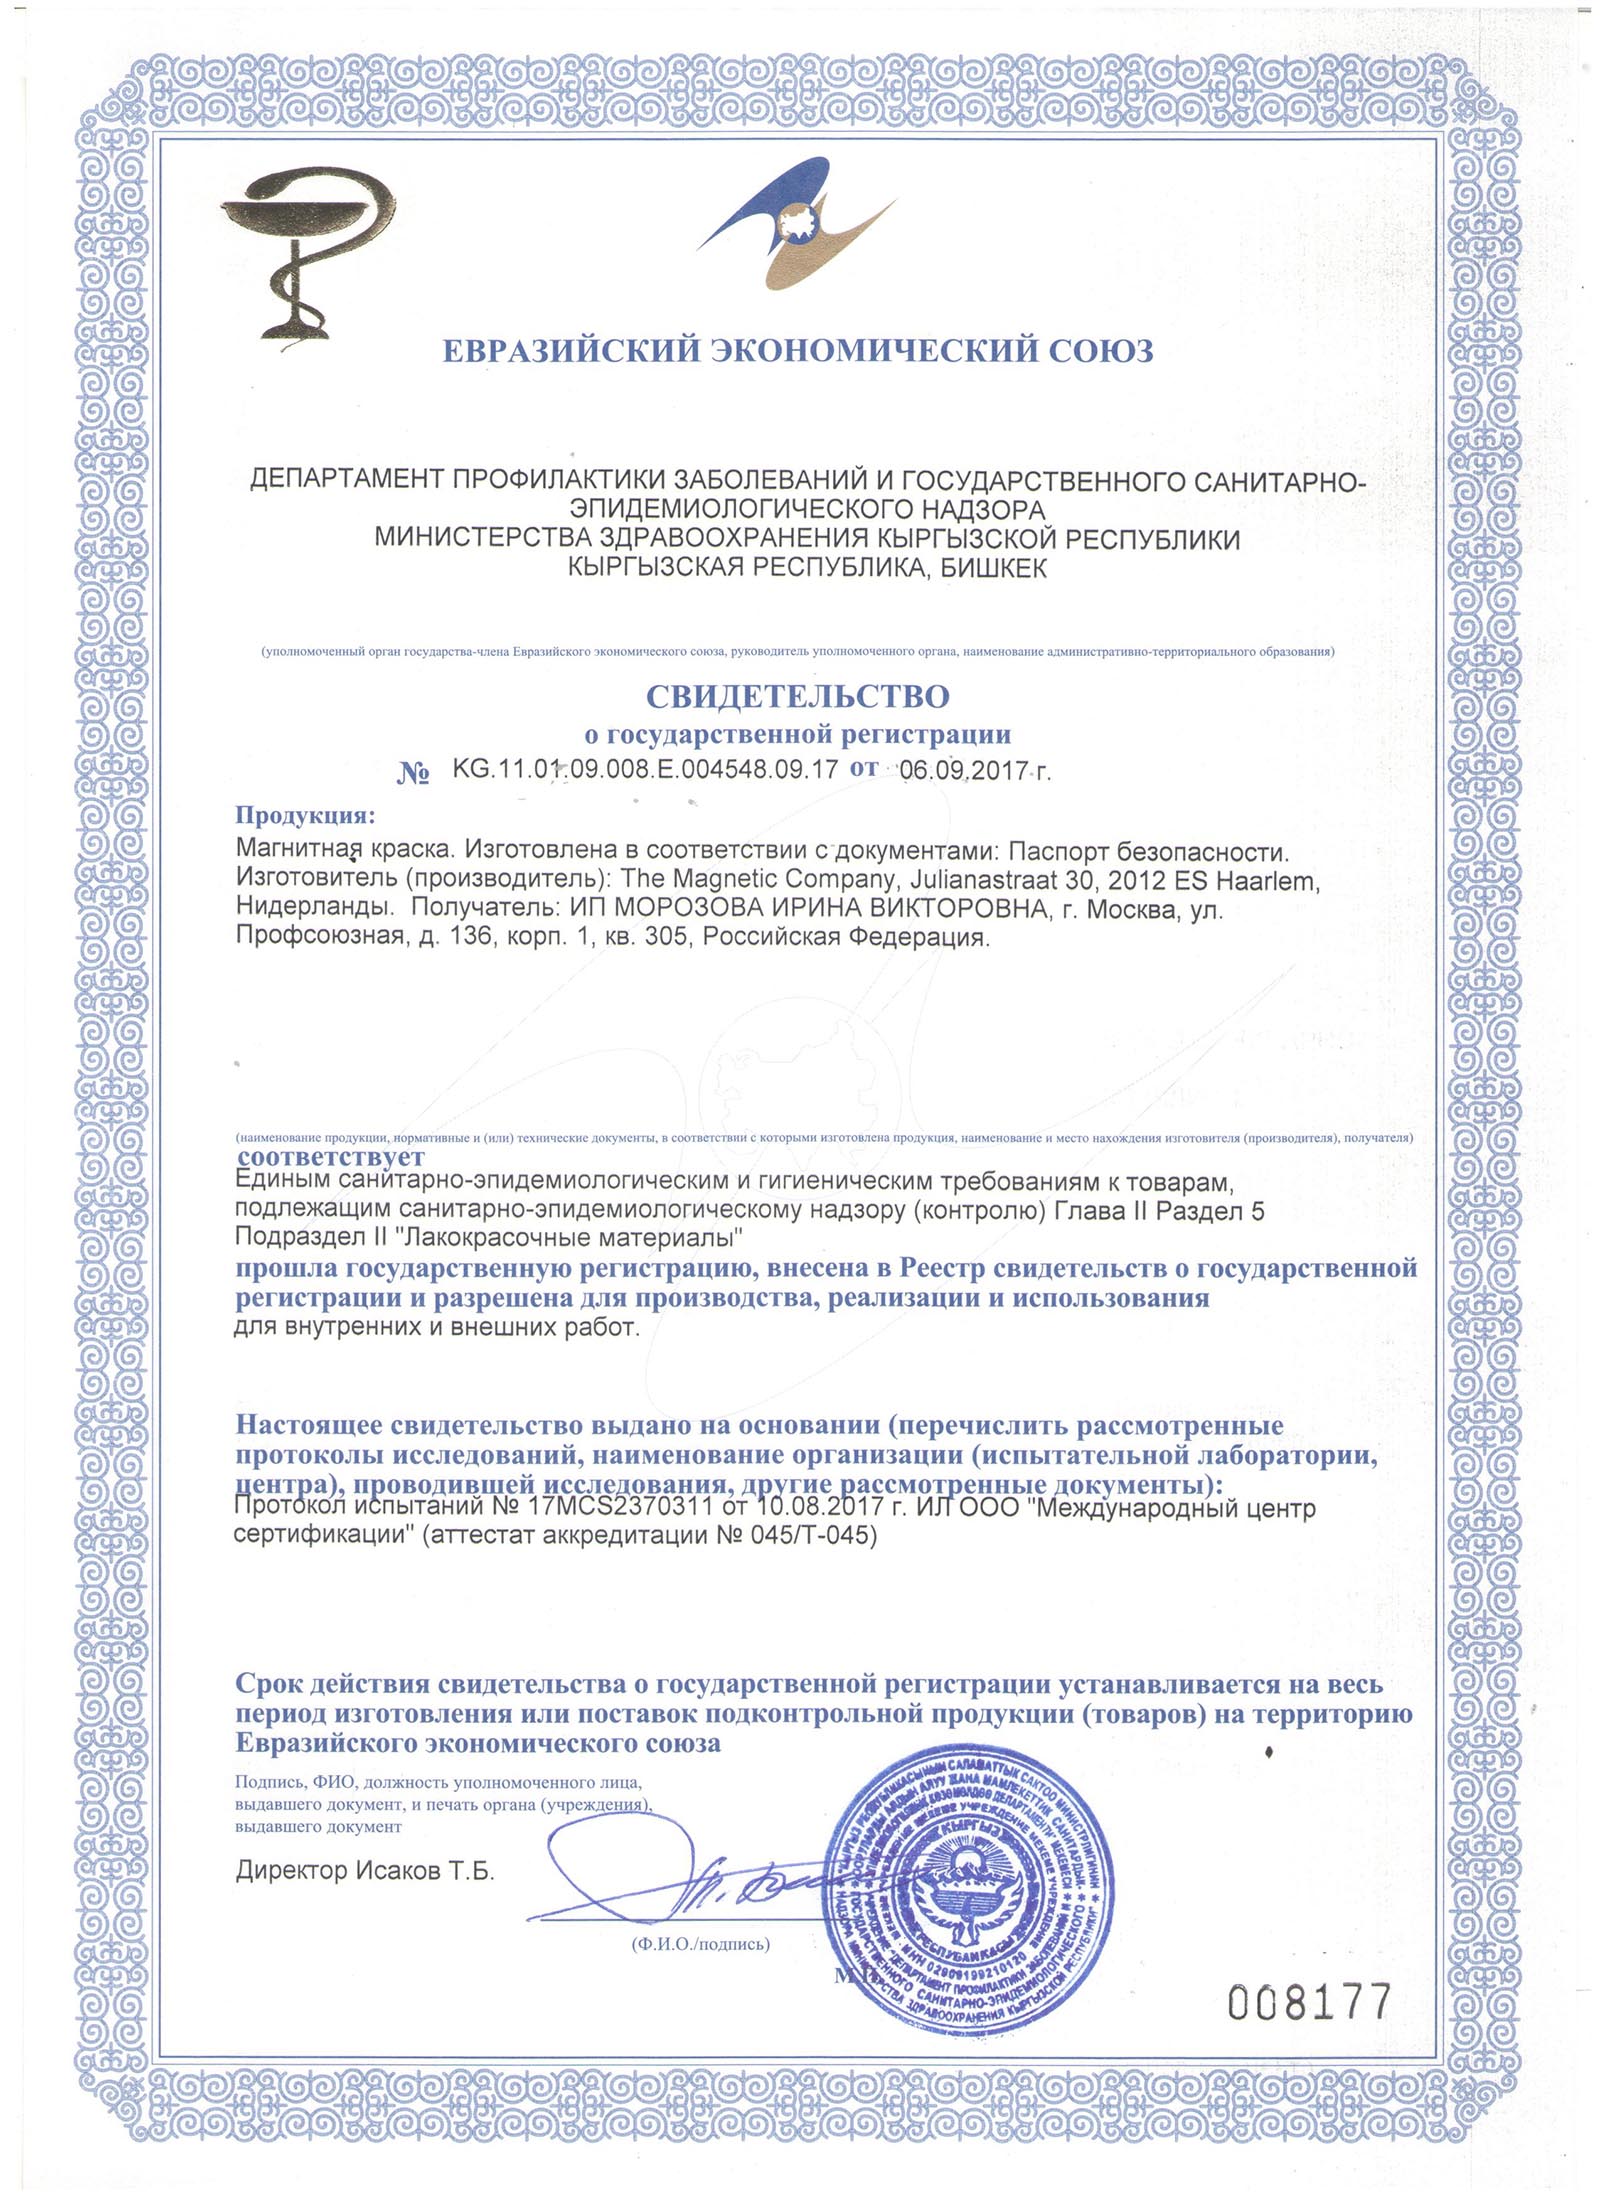 Свидетельство о государственной регистрации, Евразийский экономический союз